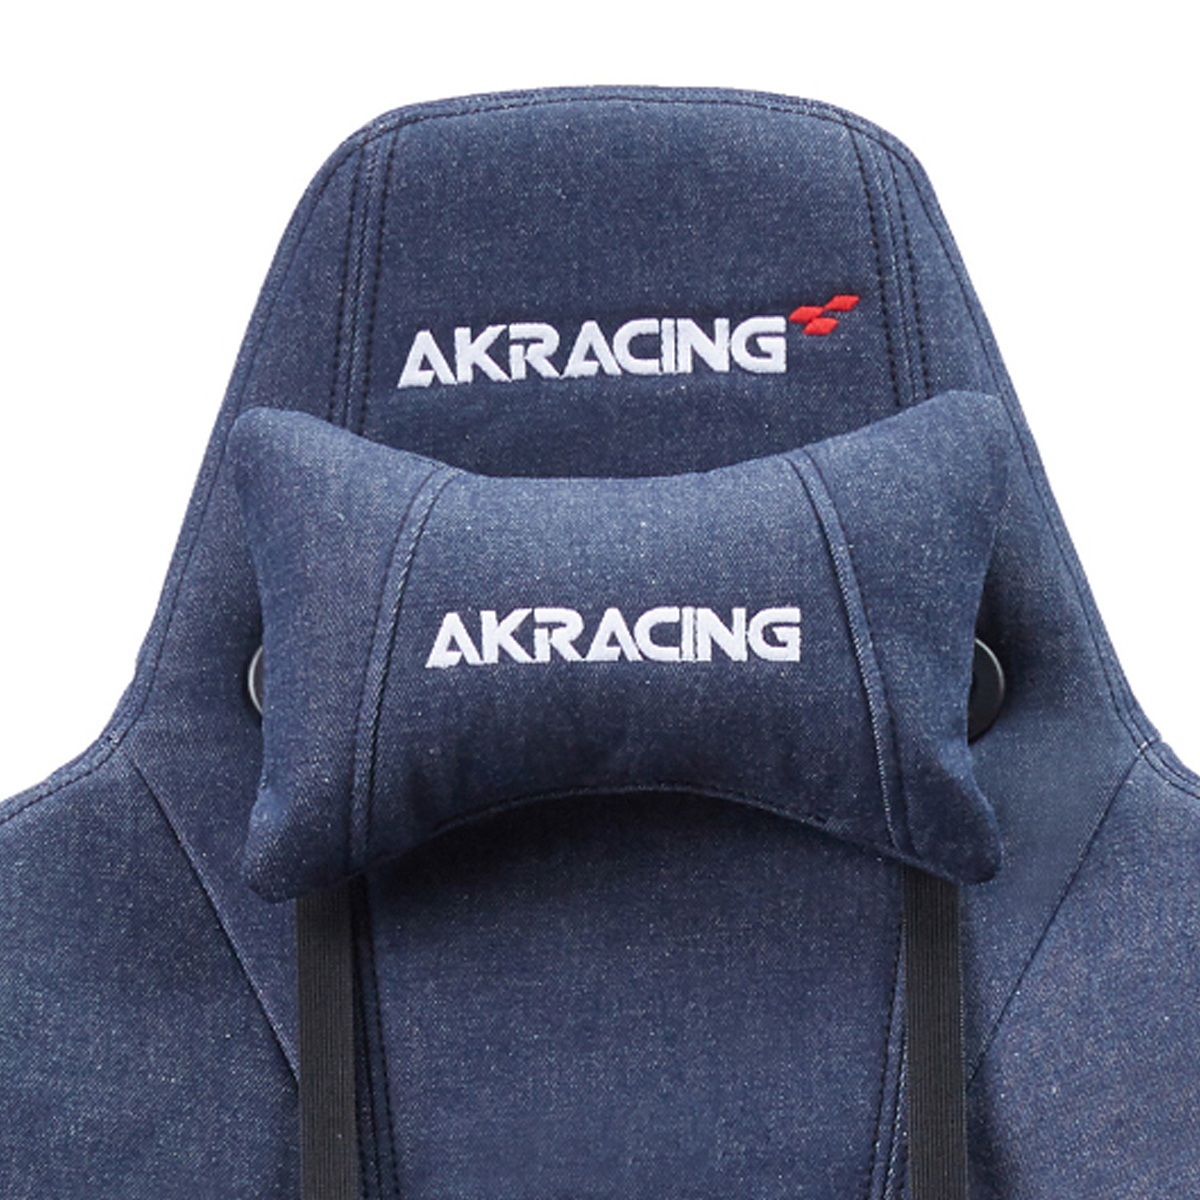 AKRacing Premium Denim ゲーミングチェア（W700×D660×H1305-1370）